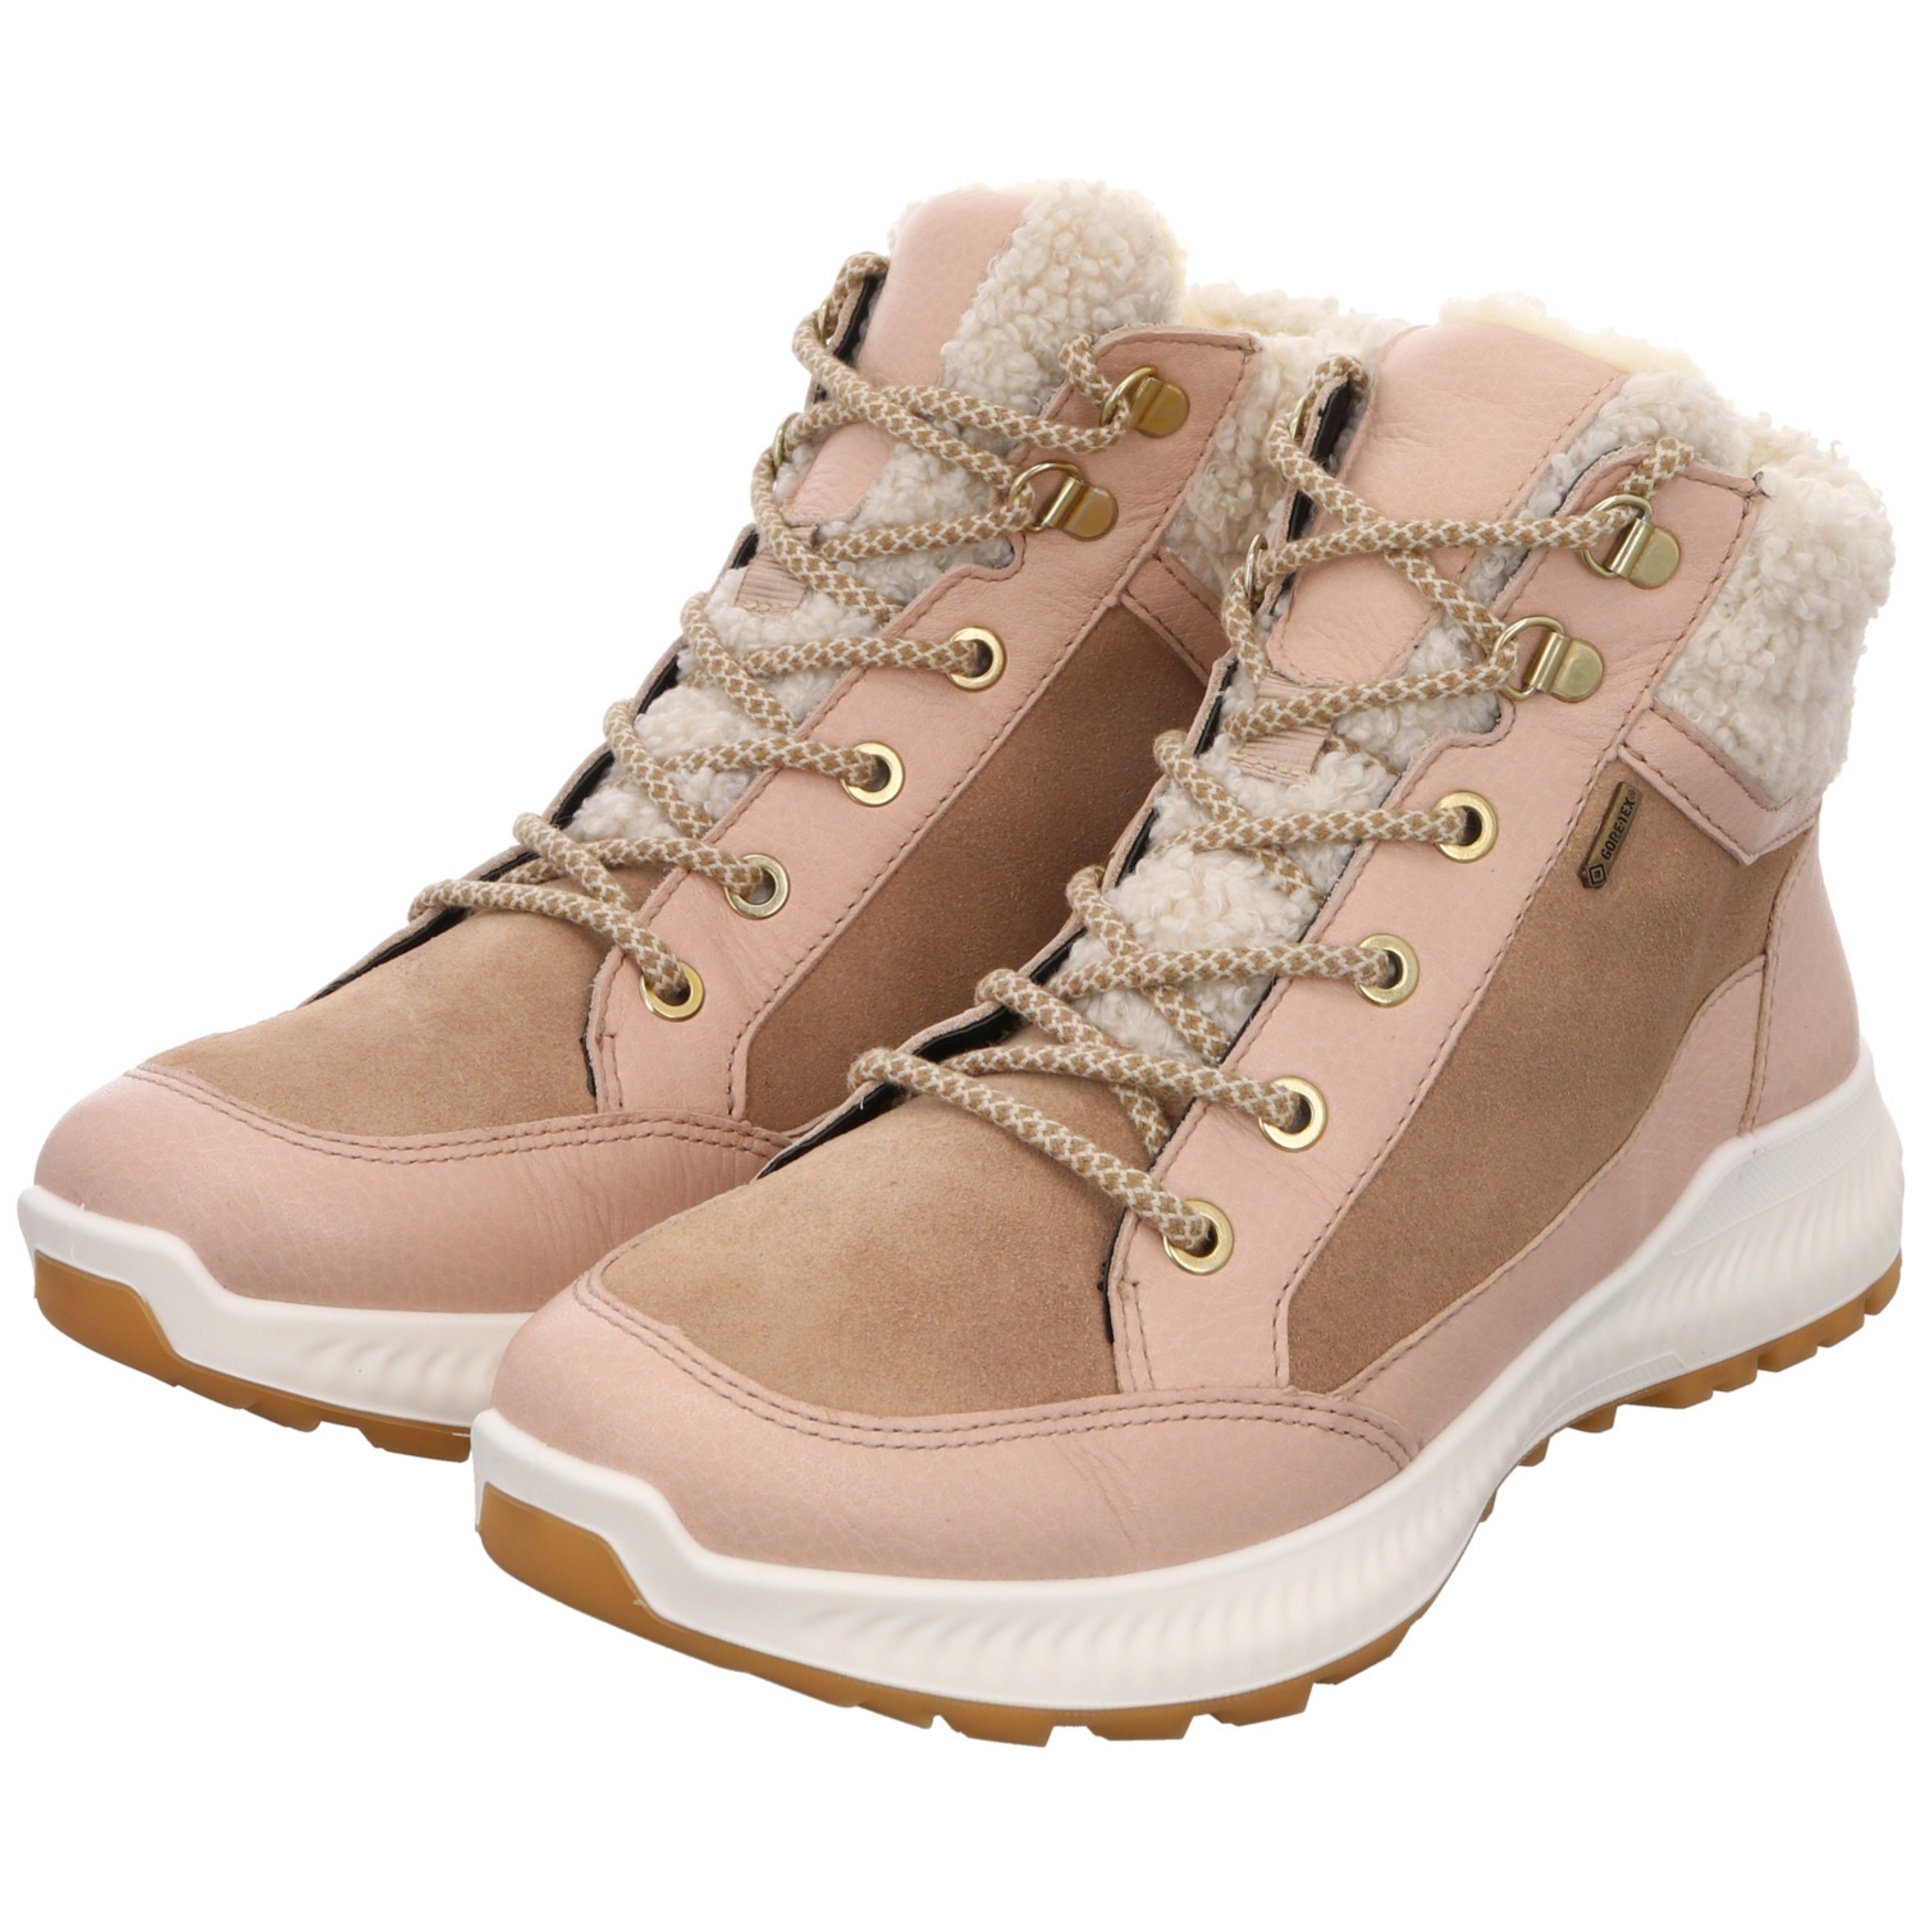 Damen Hiker Freizeit beige Elegant Ara Stiefel 046744 Schuhe Boots Leder-/Textilkombination Stiefelette